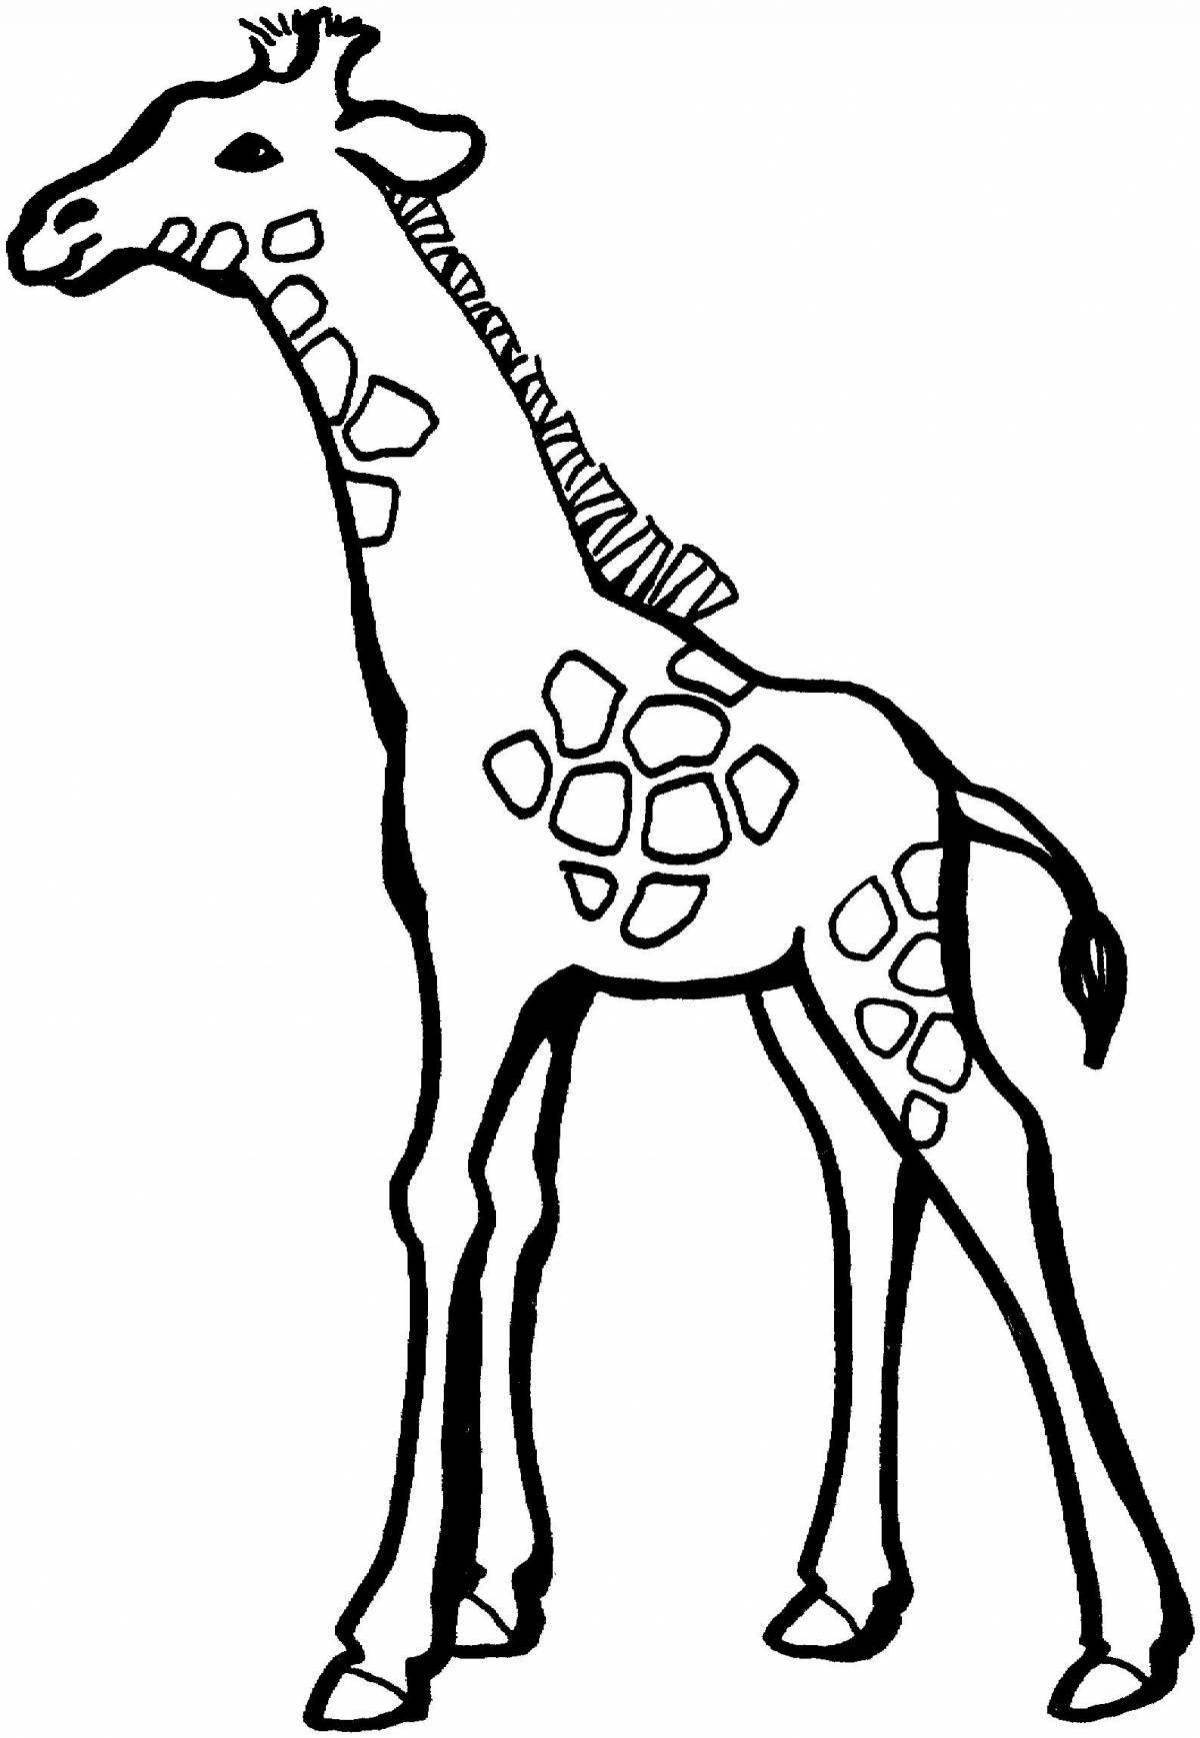 Веселая раскраска жирафа для детей 3-4 лет